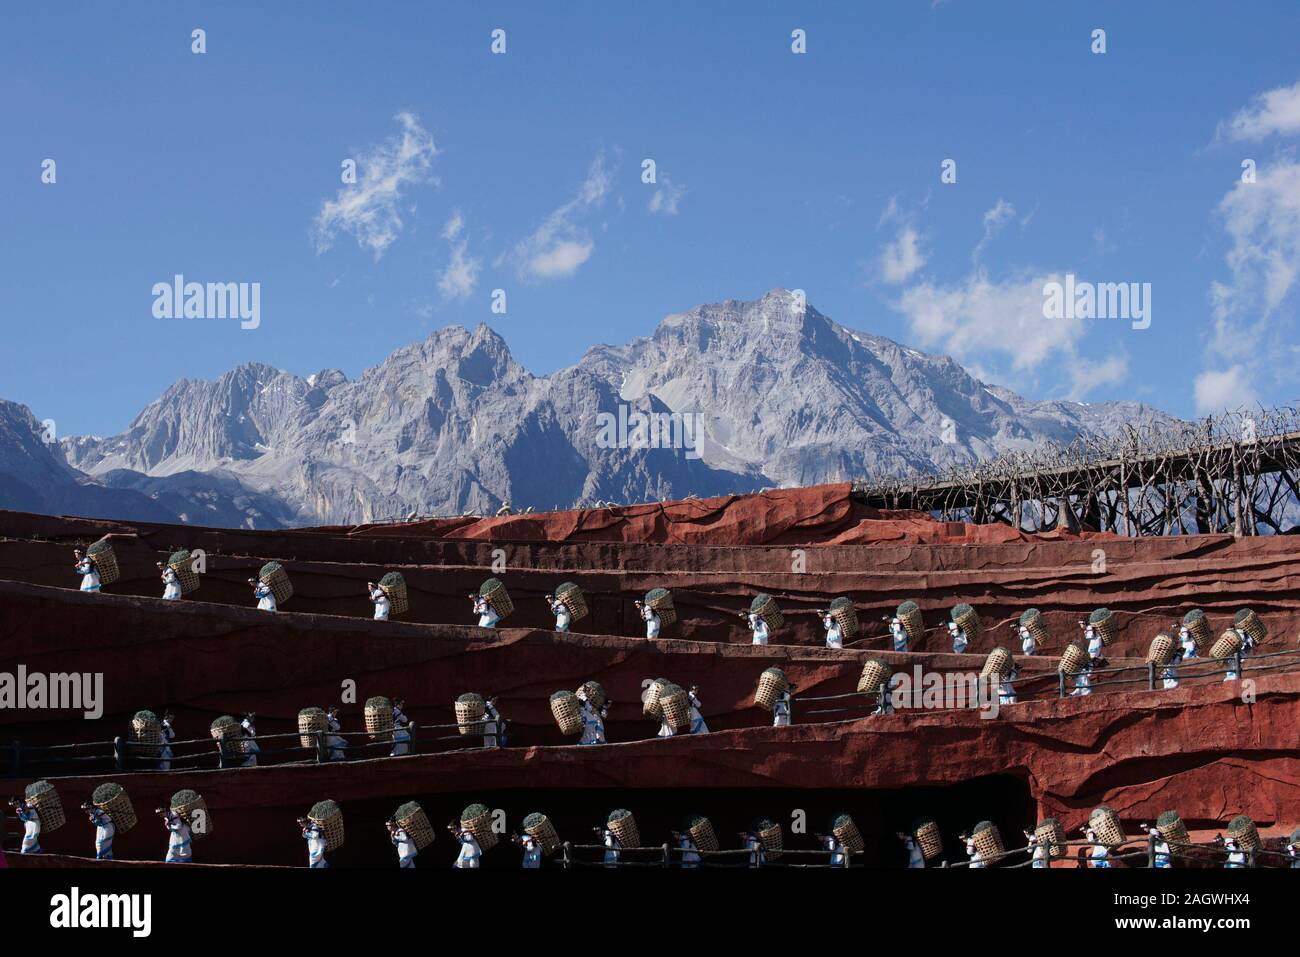 Impressione Lijiang, una manifestazione culturale da parte dei diversi gruppi etnici di Yunnan in Cina. Foto Stock